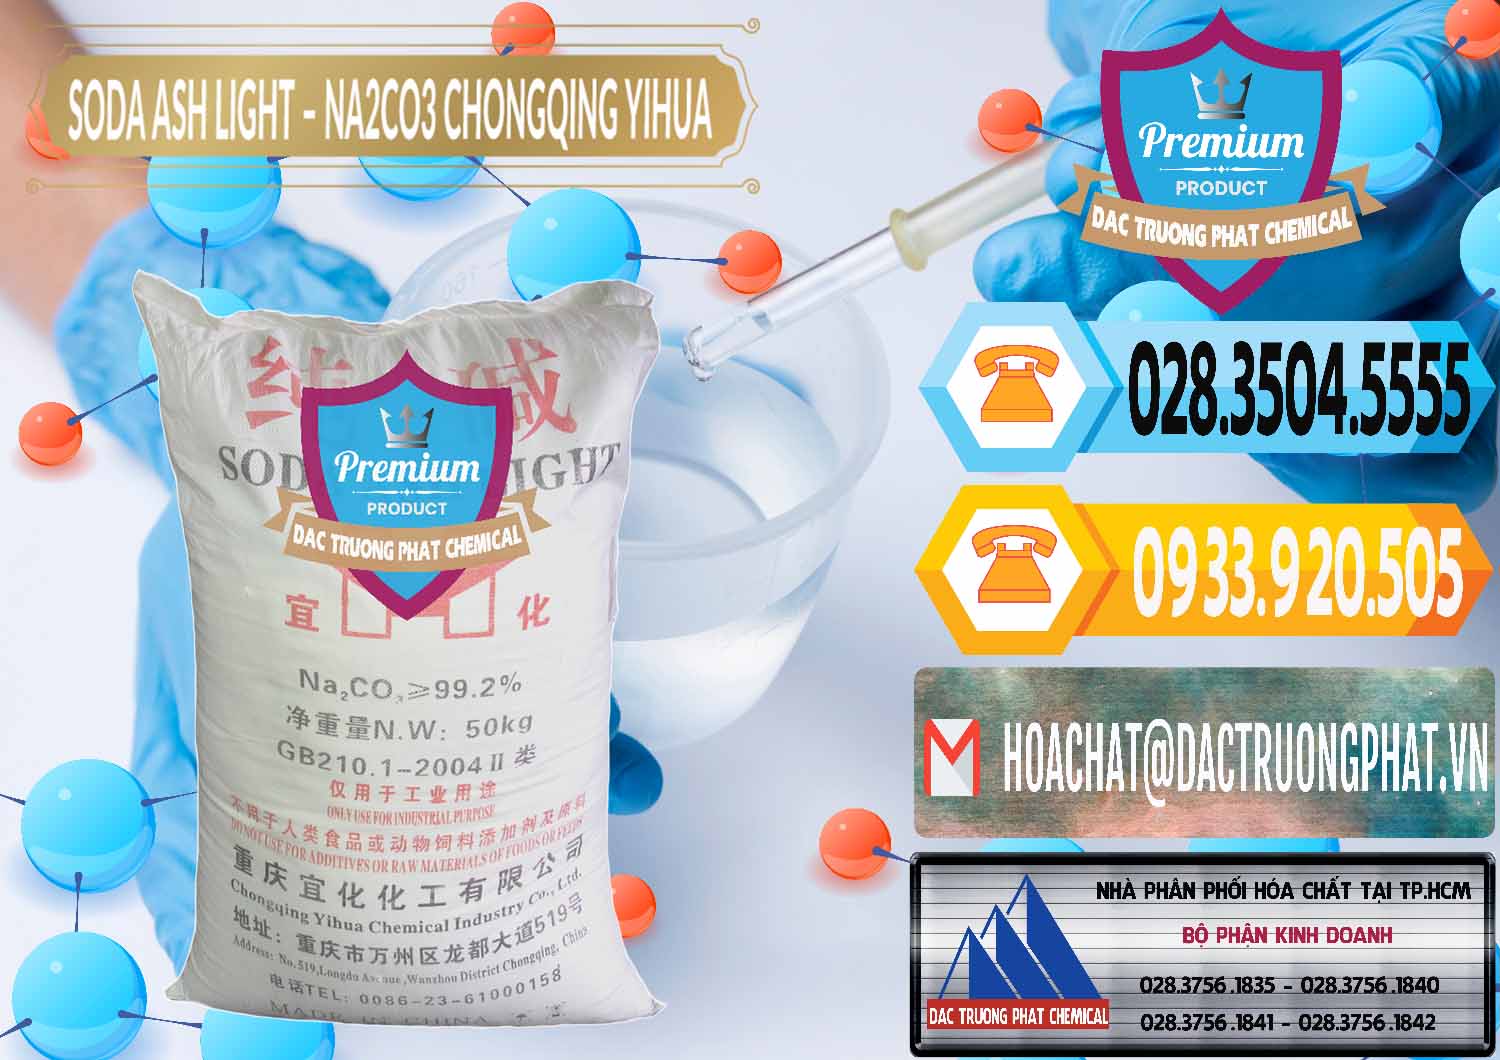 Cty chuyên bán _ cung cấp Soda Ash Light - NA2CO3 Chongqing Yihua Trung Quốc China - 0129 - Đơn vị phân phối - bán hóa chất tại TP.HCM - hoachattayrua.net